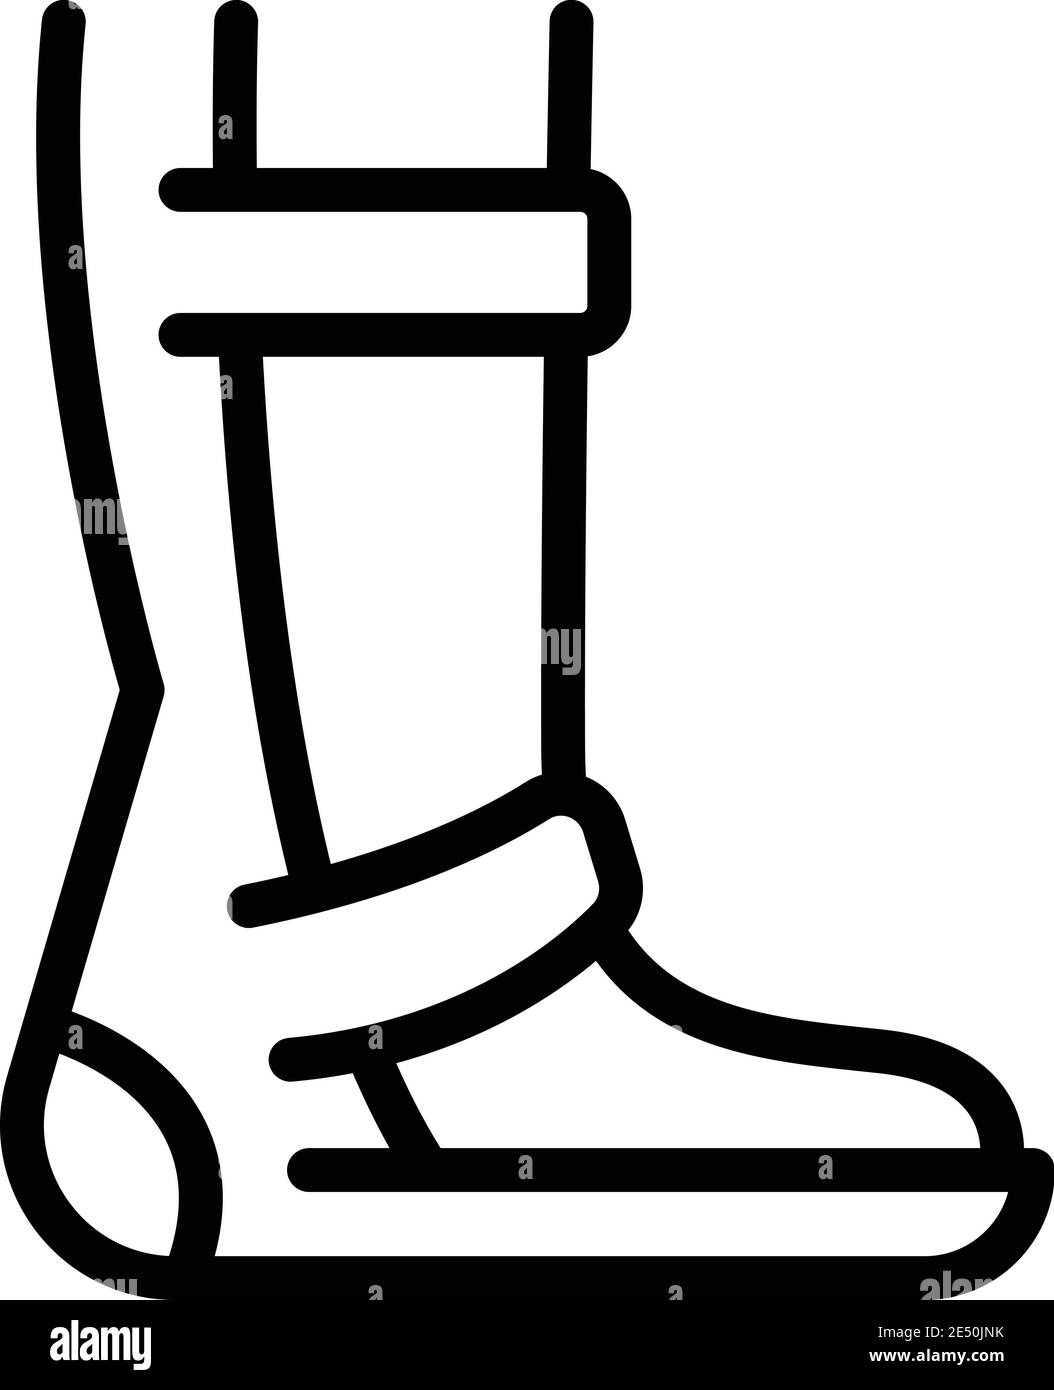 Rehabilitation Fußsymbol. Umriss Rehabilitation Fuß Vektor-Symbol für Web-Design isoliert auf weißem Hintergrund Stock Vektor